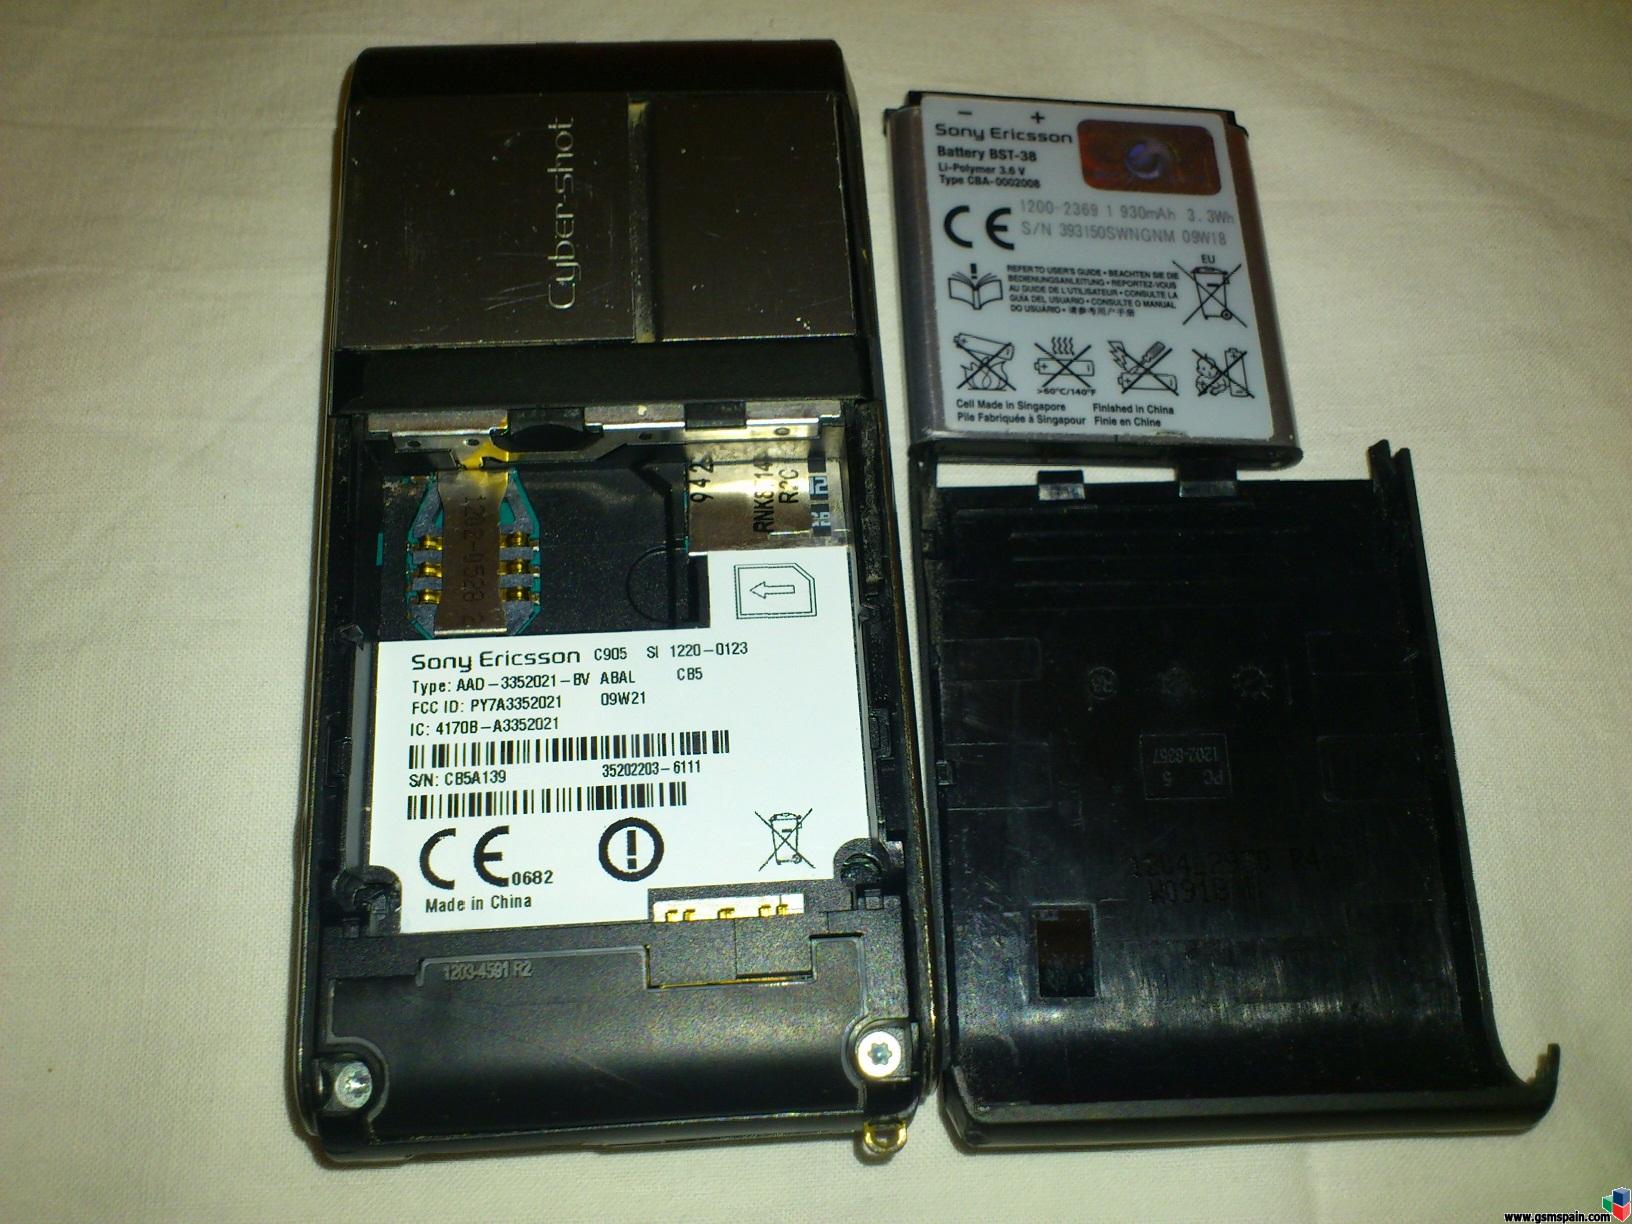 [VENDO] Sony Ericsson C905 libre para repuestos o reparar